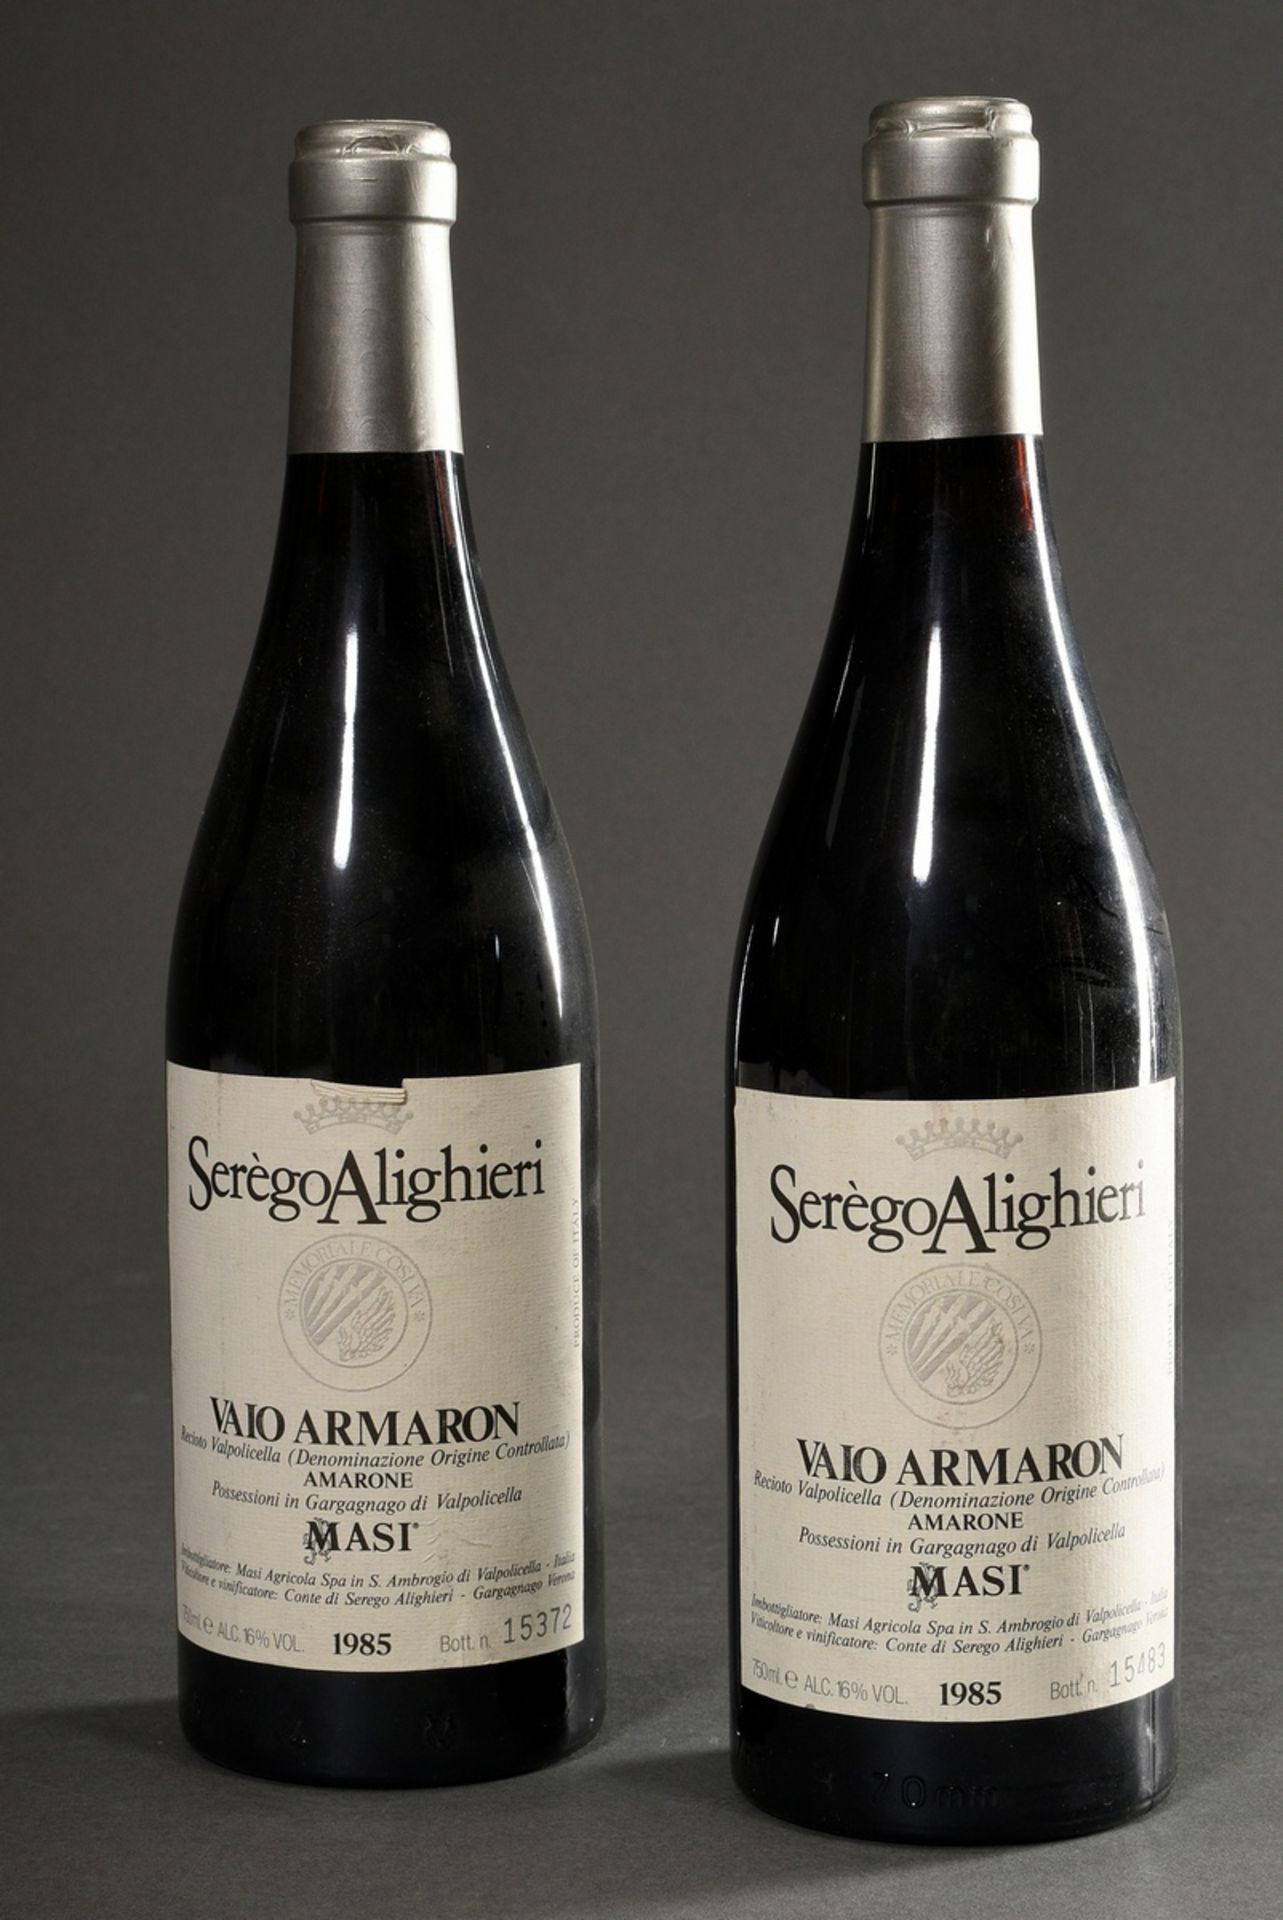 2 Bottles 1985 Masi Serego Alighieri Vaio Armaron, Valpolicella DOC, Red wine, Italy, 0,75l, hs